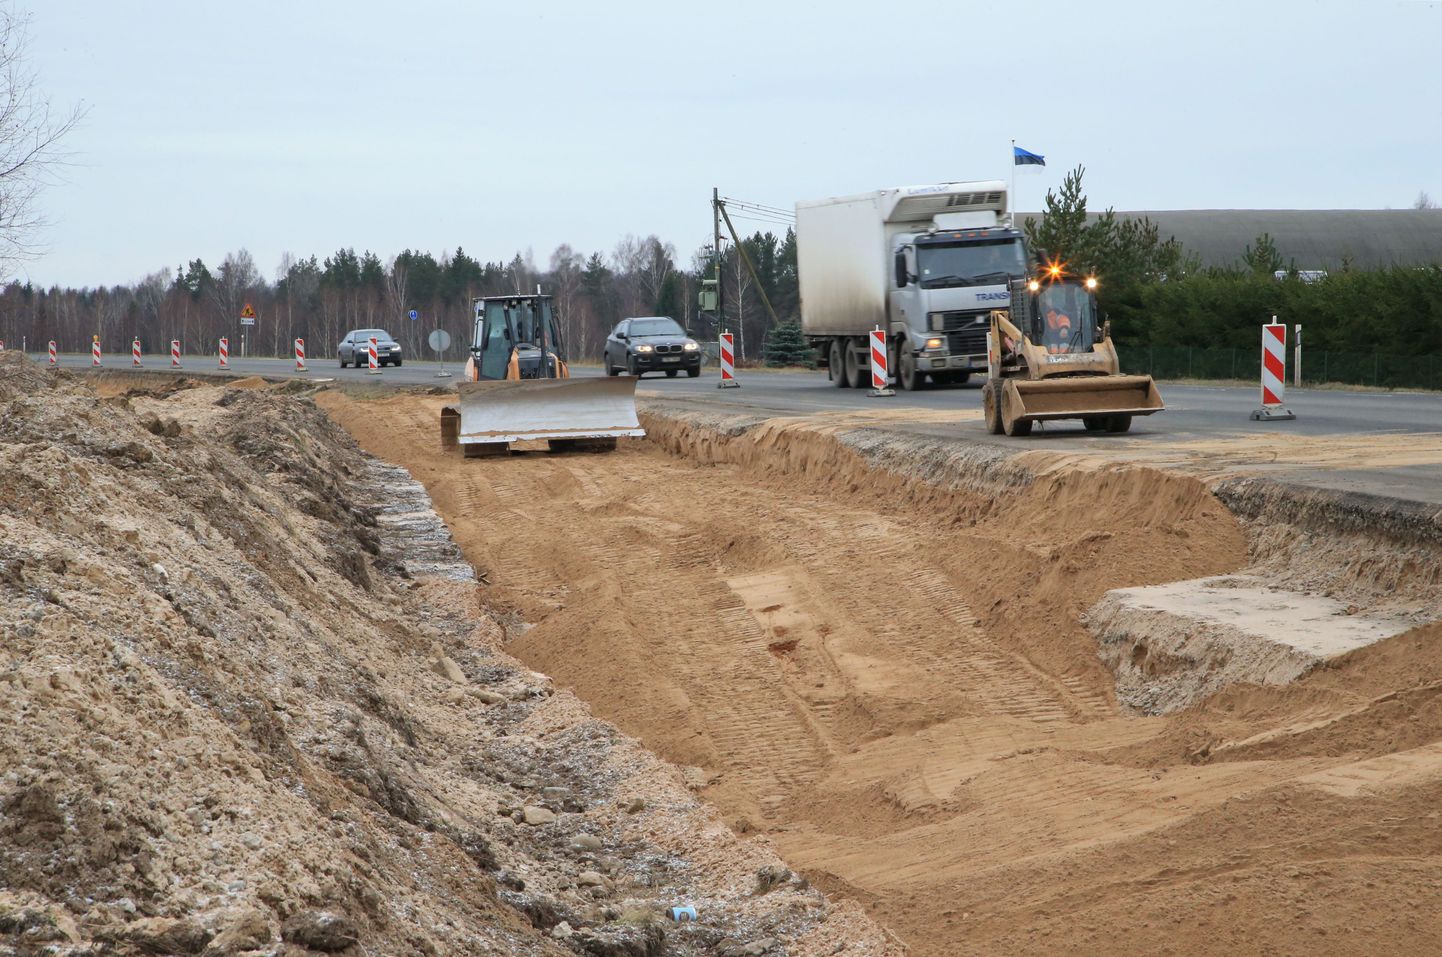 Praegu Jõgeva maantee alguses käiv ehitus pannakse järgmise nädala lõpus ajutiselt seisma. Tööde lõpp on planeeritud kevadesse.